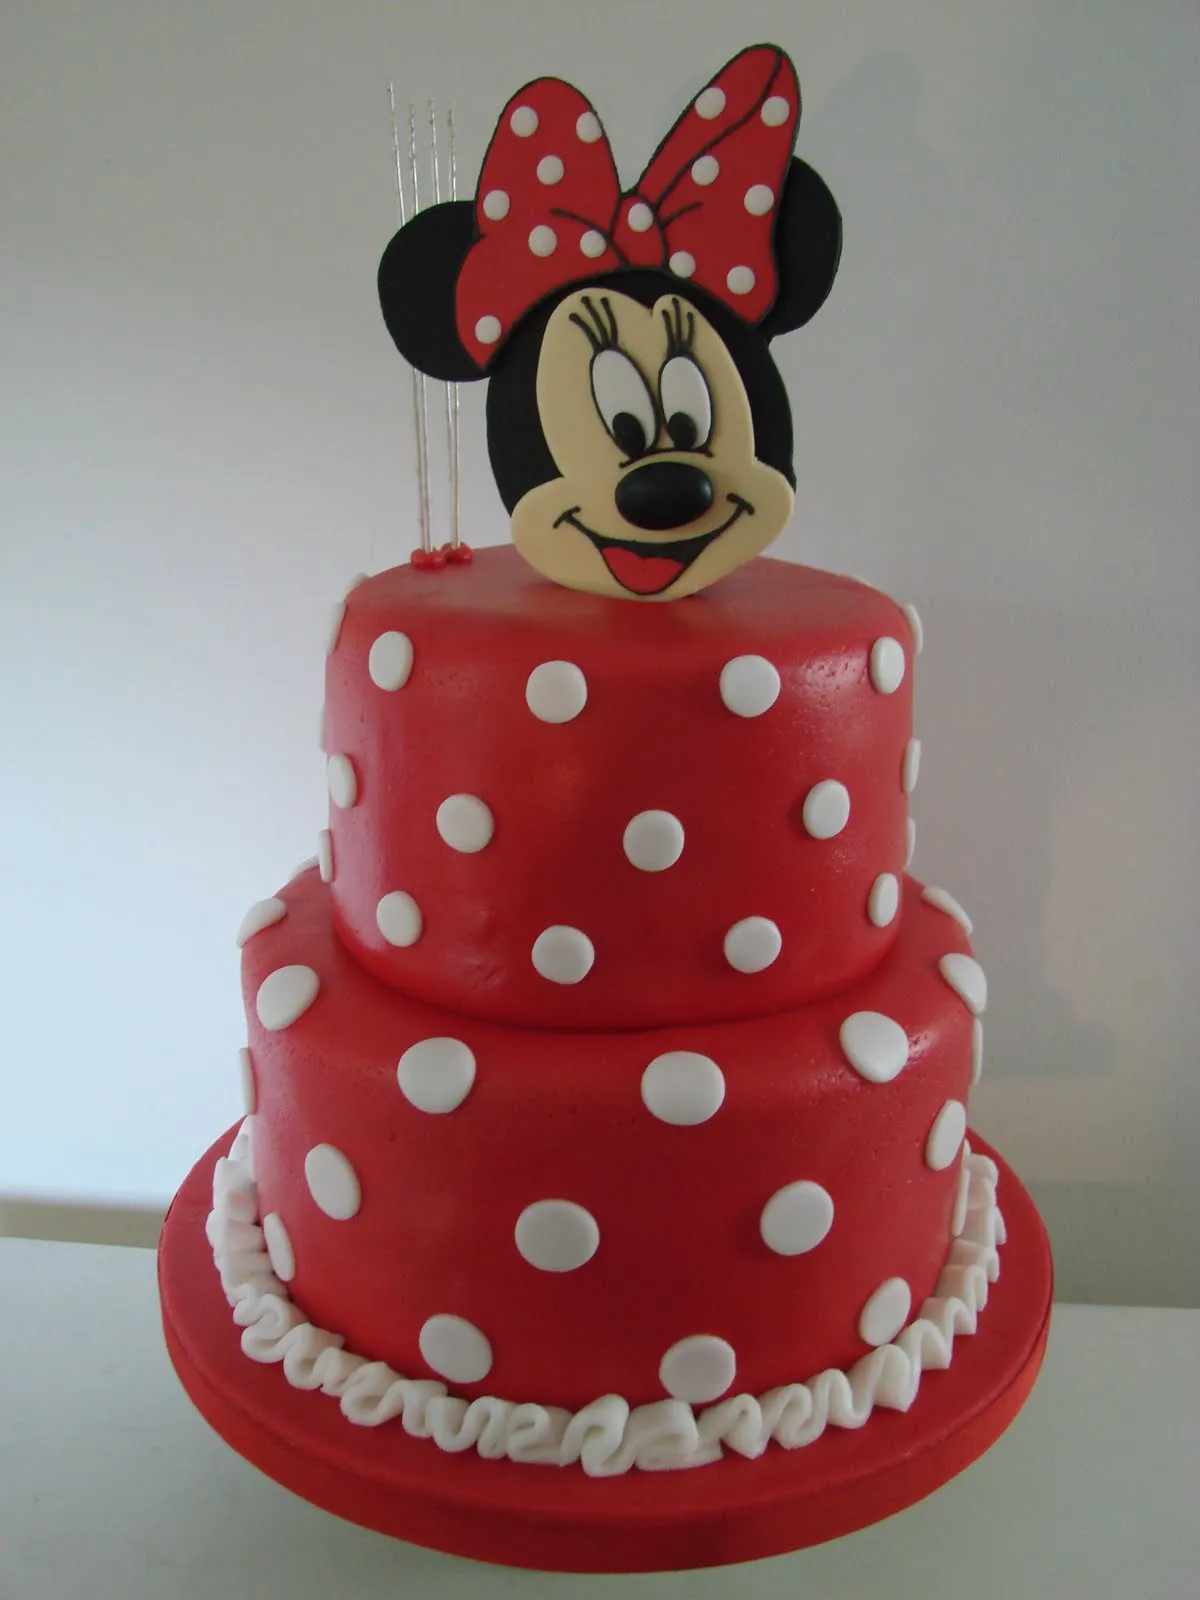  ... Minnie Mouse torta de vainilla con crema de chocolate cubierta de